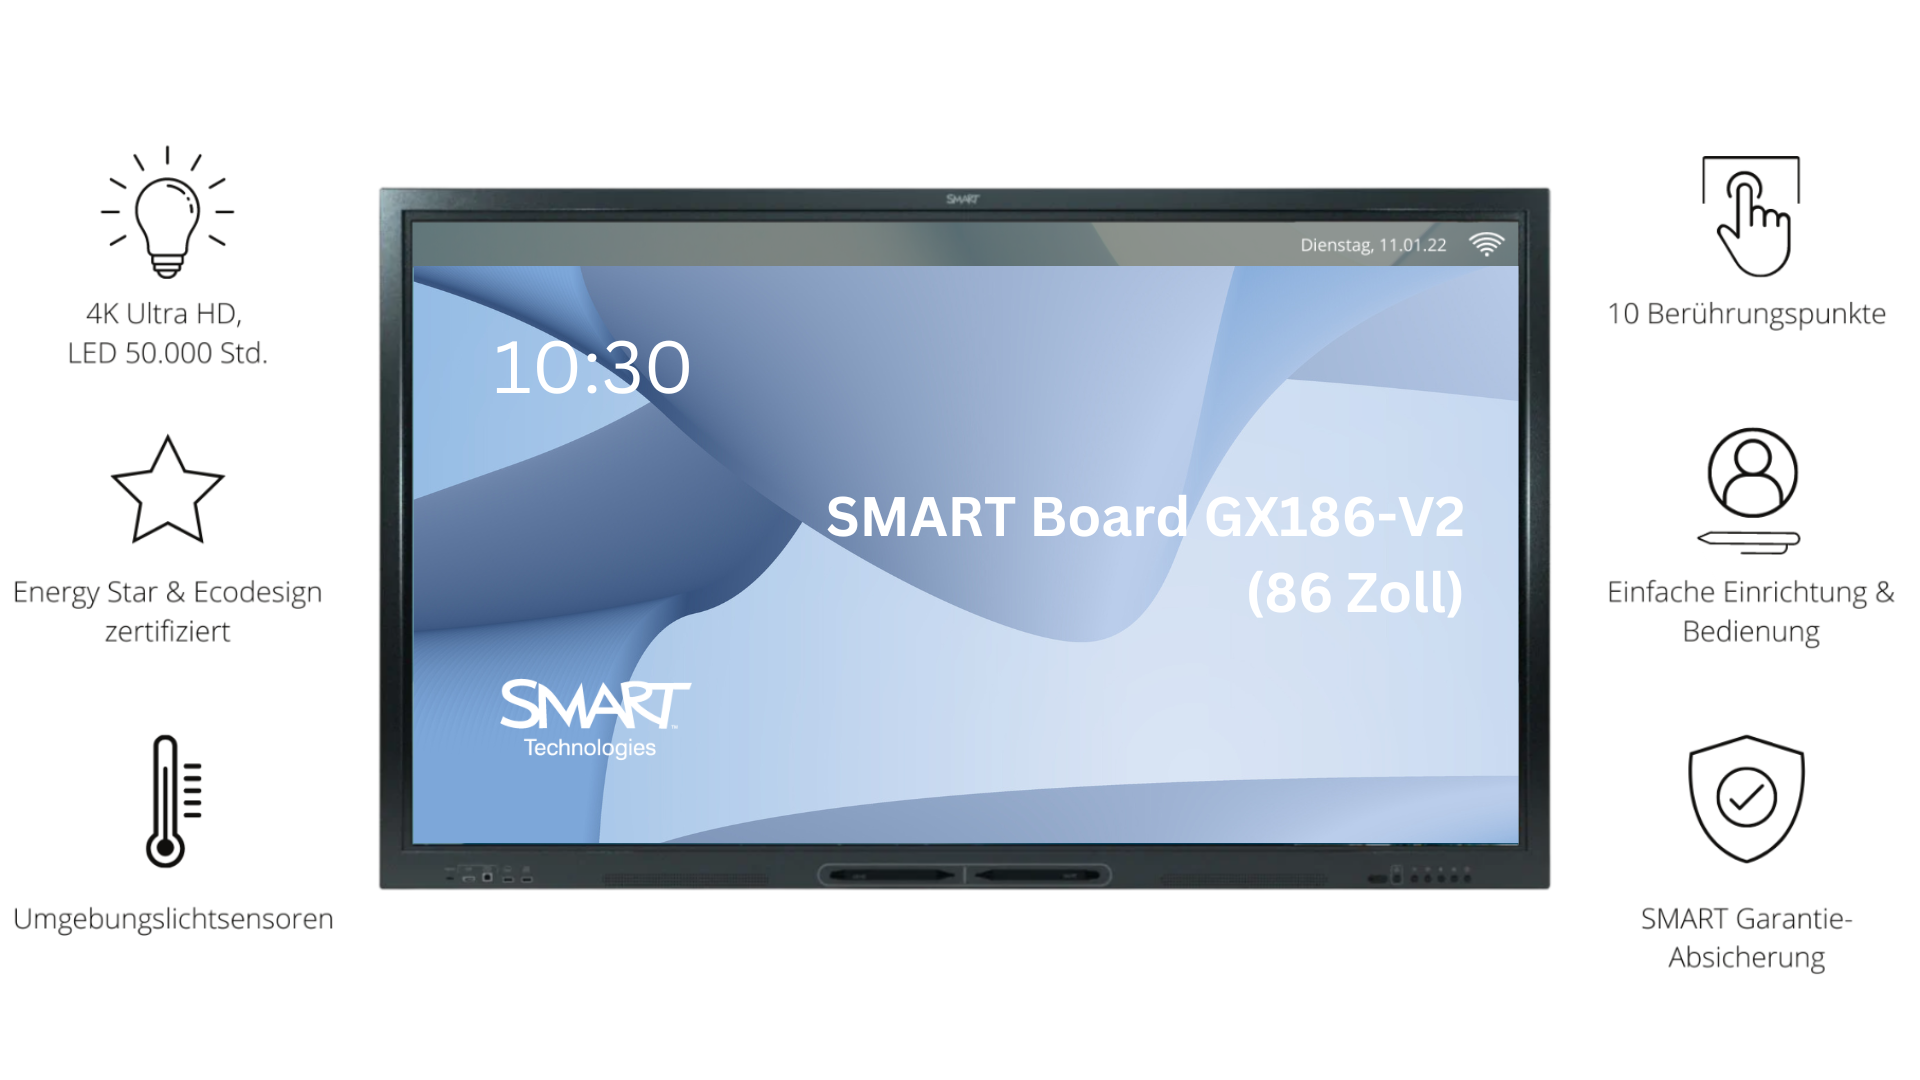 Bundle: SMART Board GX186-V2 (86 Zoll) Features fido